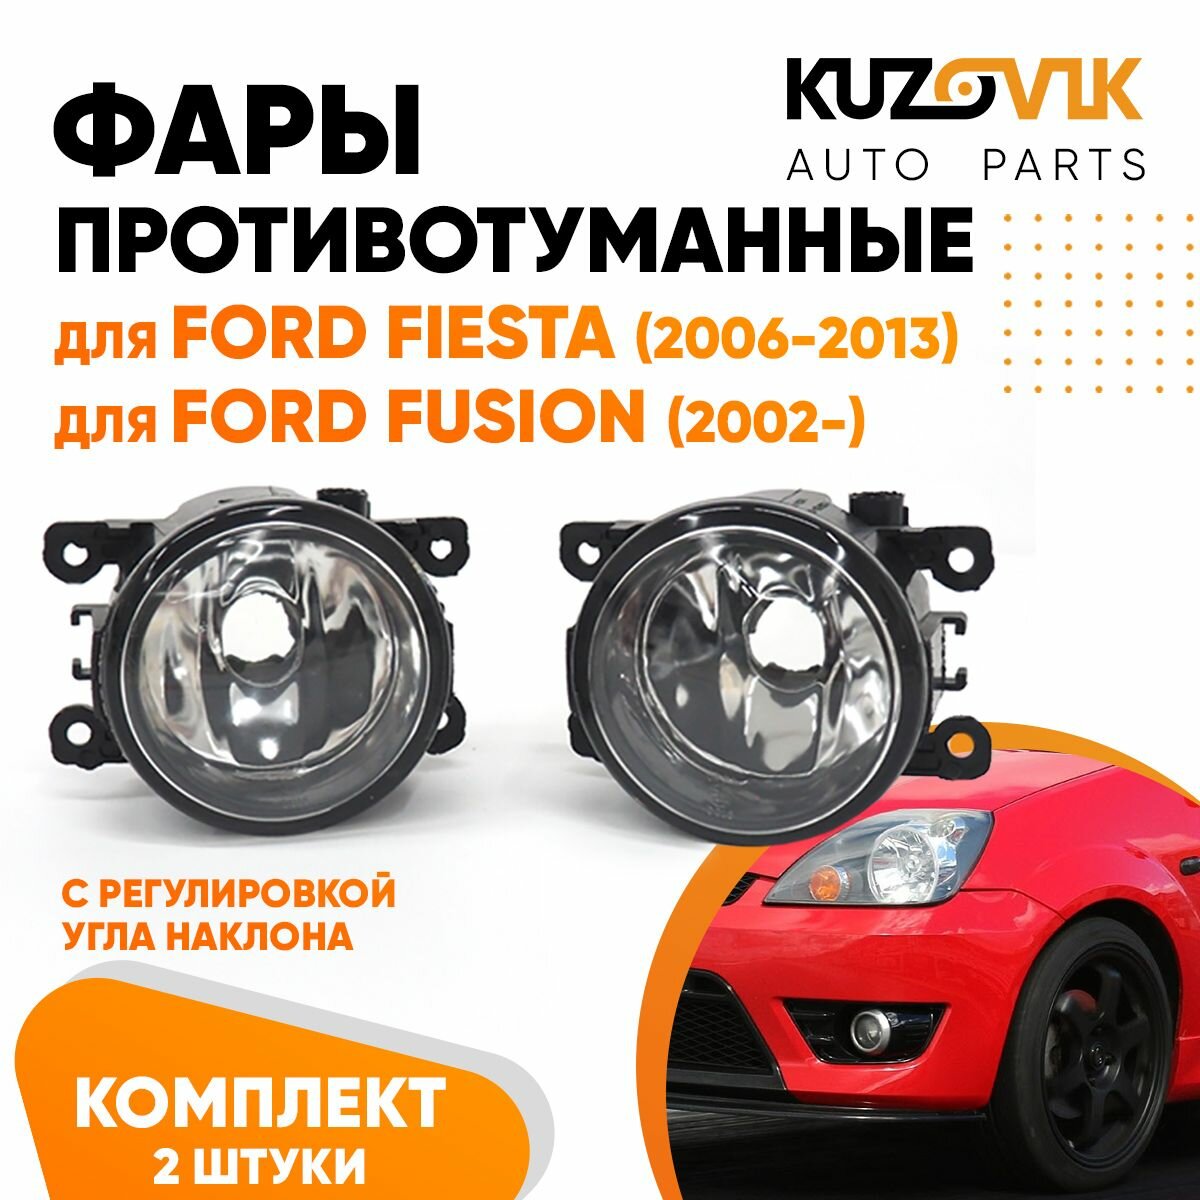 Противотуманные фары для Форд Фиеста Ford Fiesta MK5 (2006-2013) Фокус Focus Фьюжн Fusion (2002-) комплект левая и правая (2 штуки) с регулировкой угла наклона птф туманки.